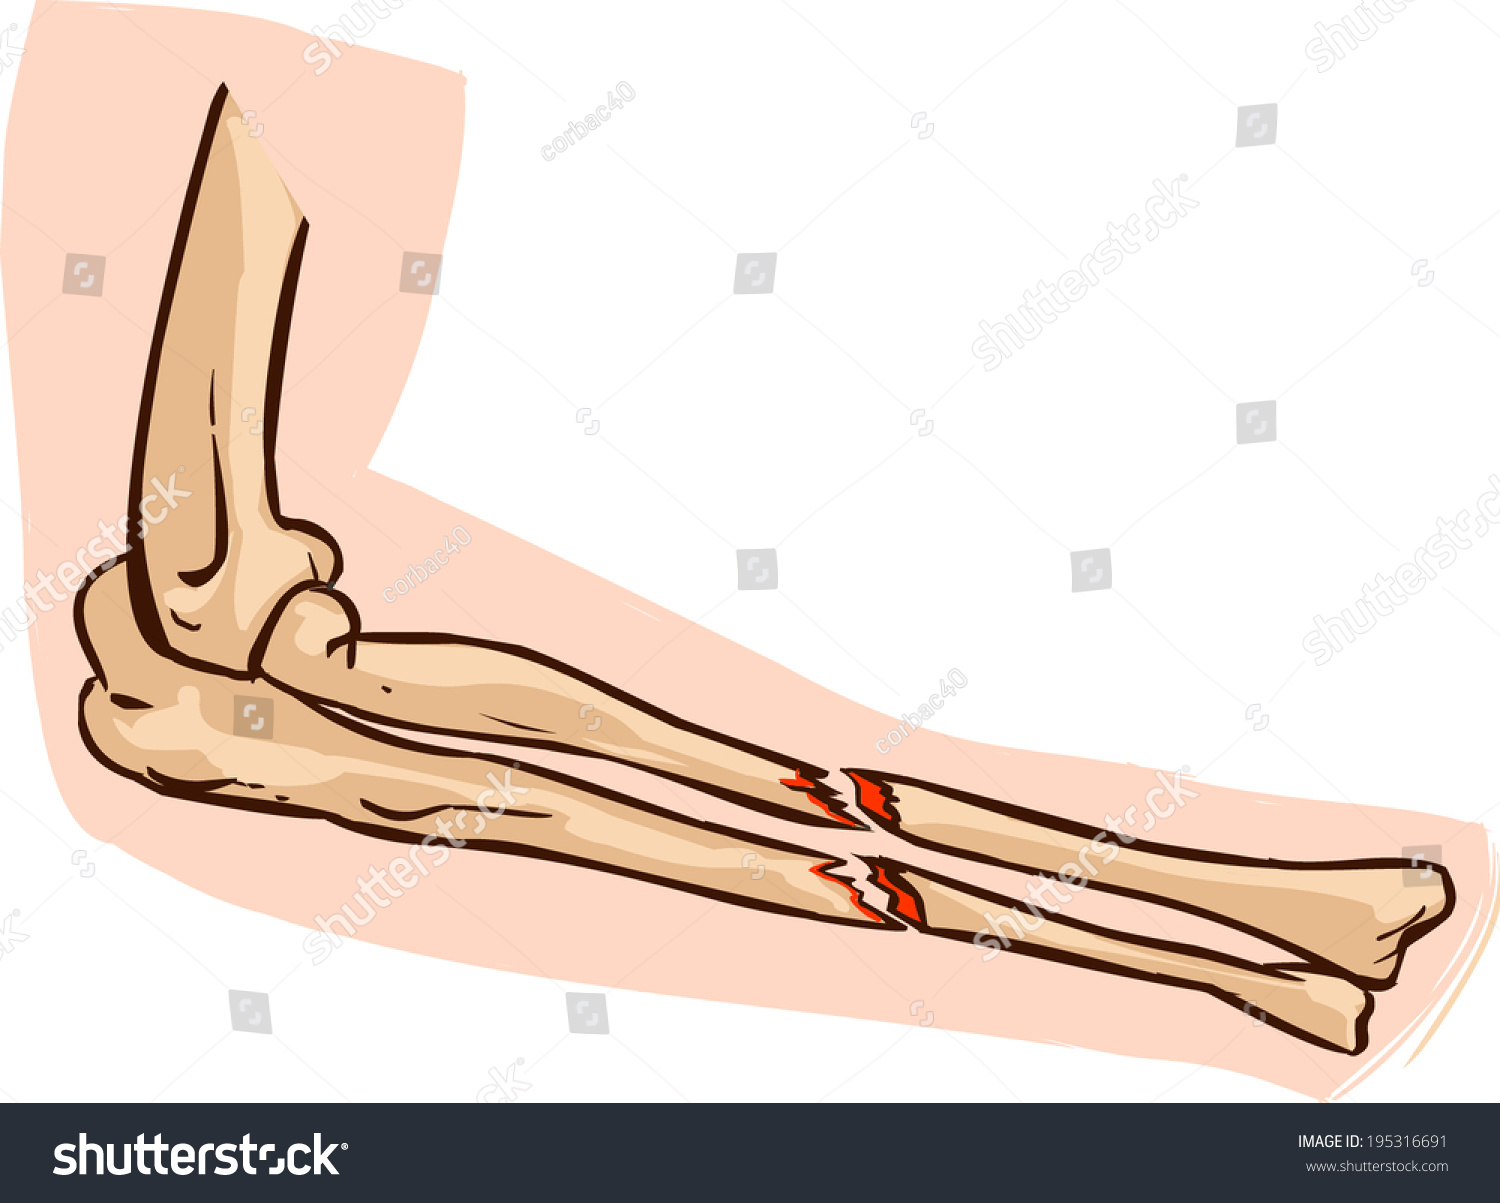 Картина перелома костей руки